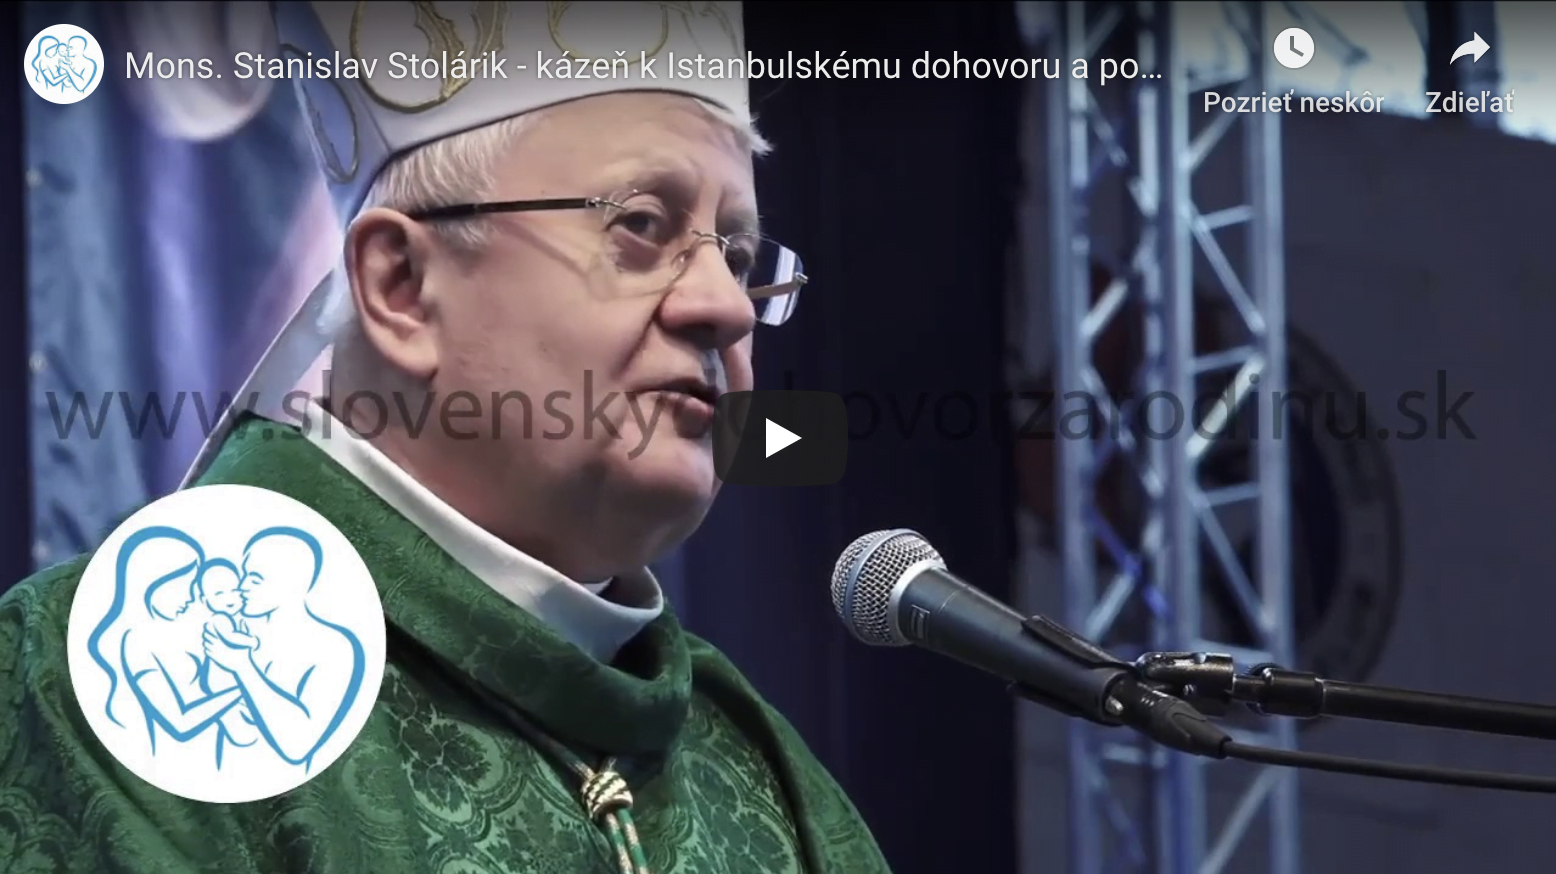 Mons. Stanislav Stolárik – kázeň k Istanbulskému dohovru a podpora SDZR